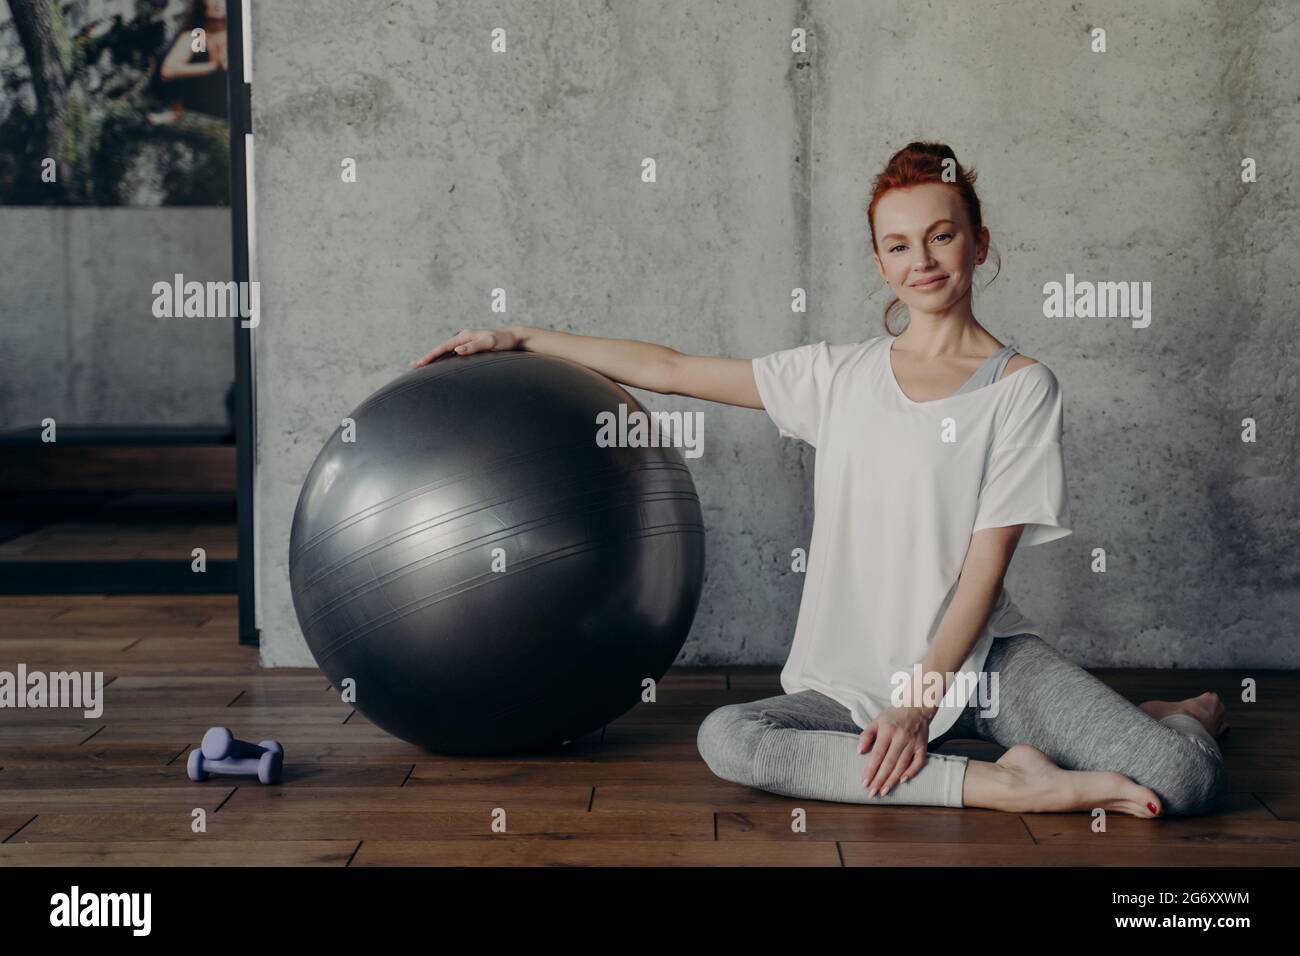 Glückliche junge Fitness-Frau, die sich nach dem Pilates-Training entspannt, während sie mit einem großen Gymnastikball auf dem Boden sitzt Stockfoto